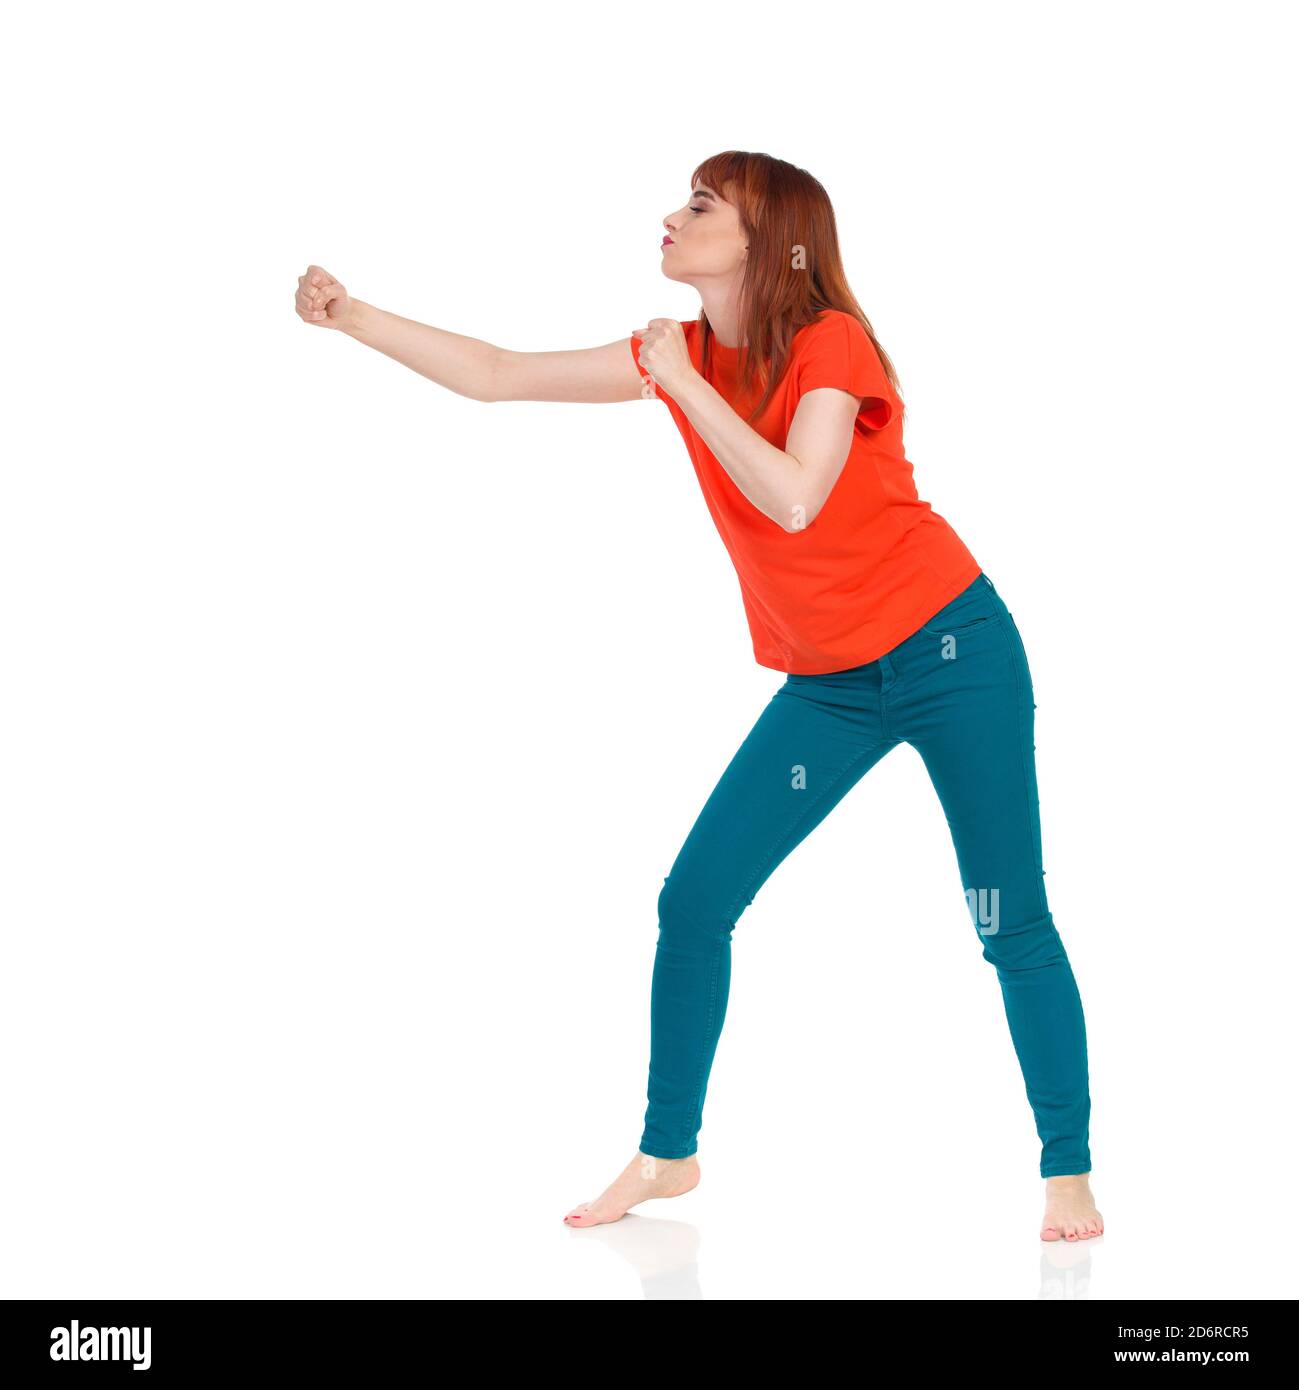 Junge Frau im orangefarbenen T-Shirt und grünen Jeans steht barfuß, klatscht ihre Faust und schaut weg. Studioaufnahme in voller Länge, isoliert auf Weiß. Stockfoto